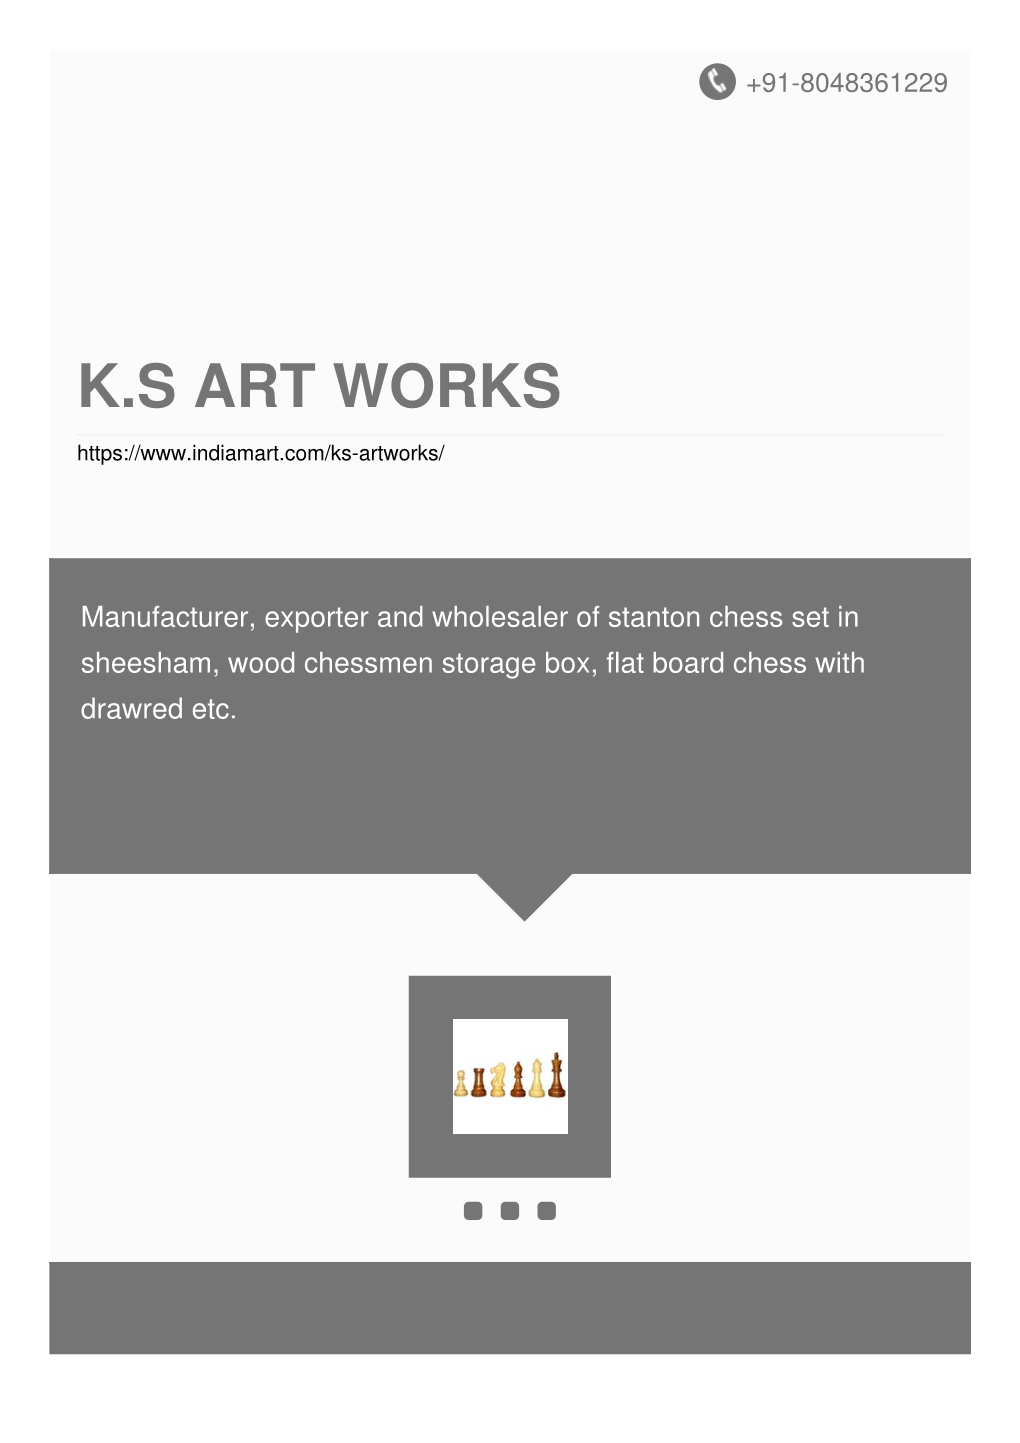 K.S Art Works